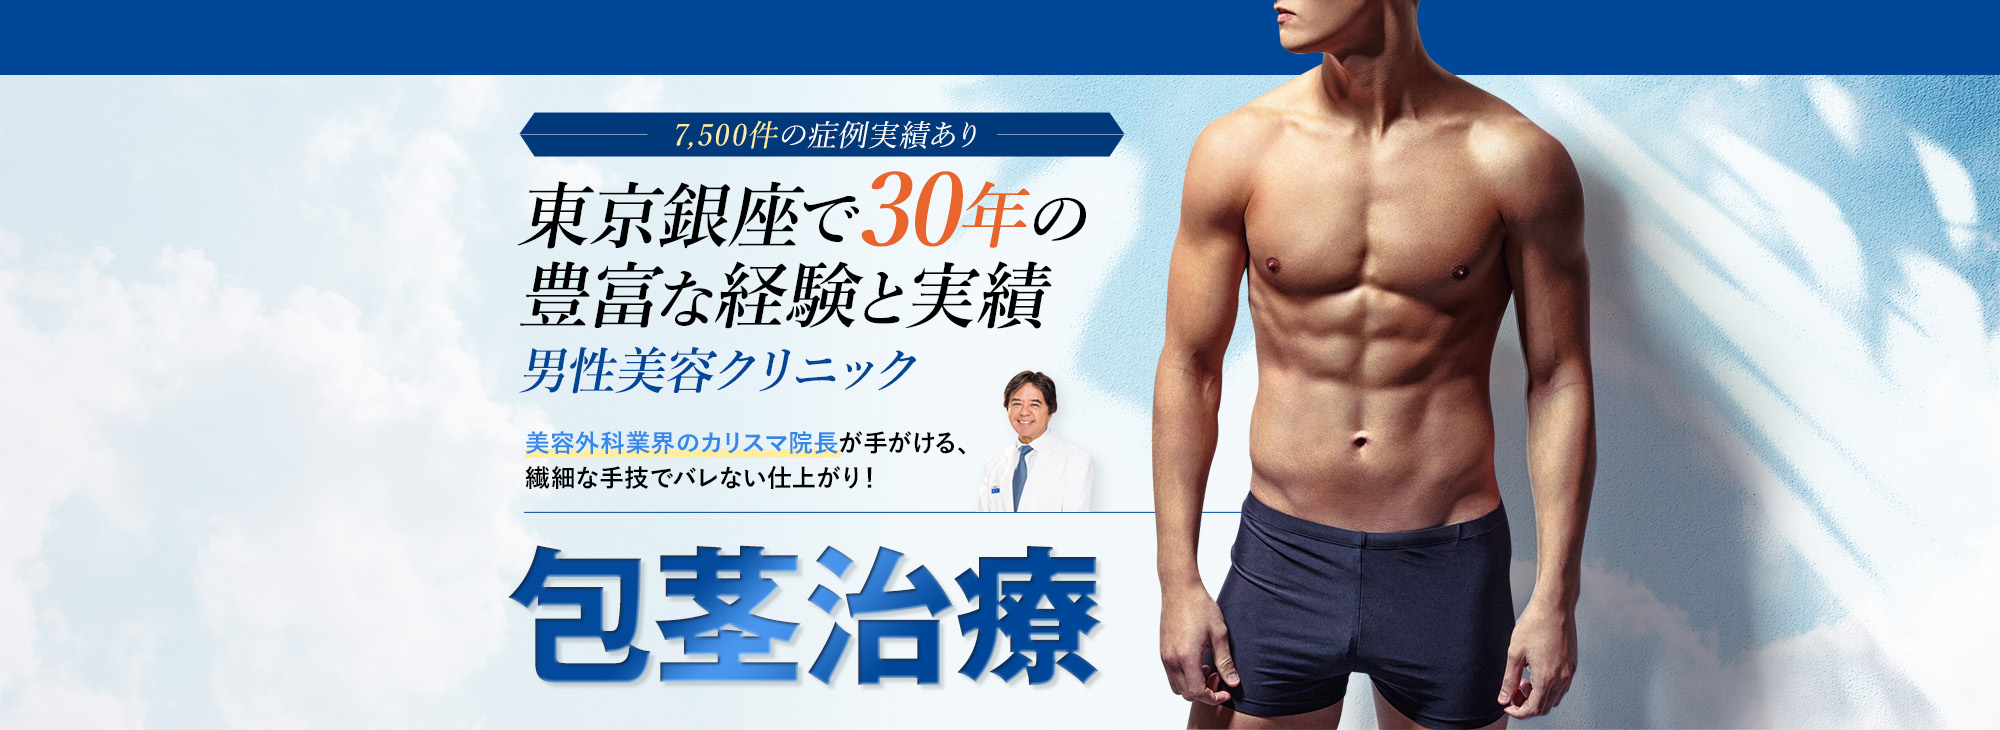 7,500件の症例実績あり東京銀座で30年の豊富な経験と実績 男性美容クリニック 切らない術式「ノンカットドロー法」 肥満体型にオススメ「下腹部リポサクション法」 ご希望や症状に合わせて施術法が選べます。長茎術 コムロ式ドローアウト法